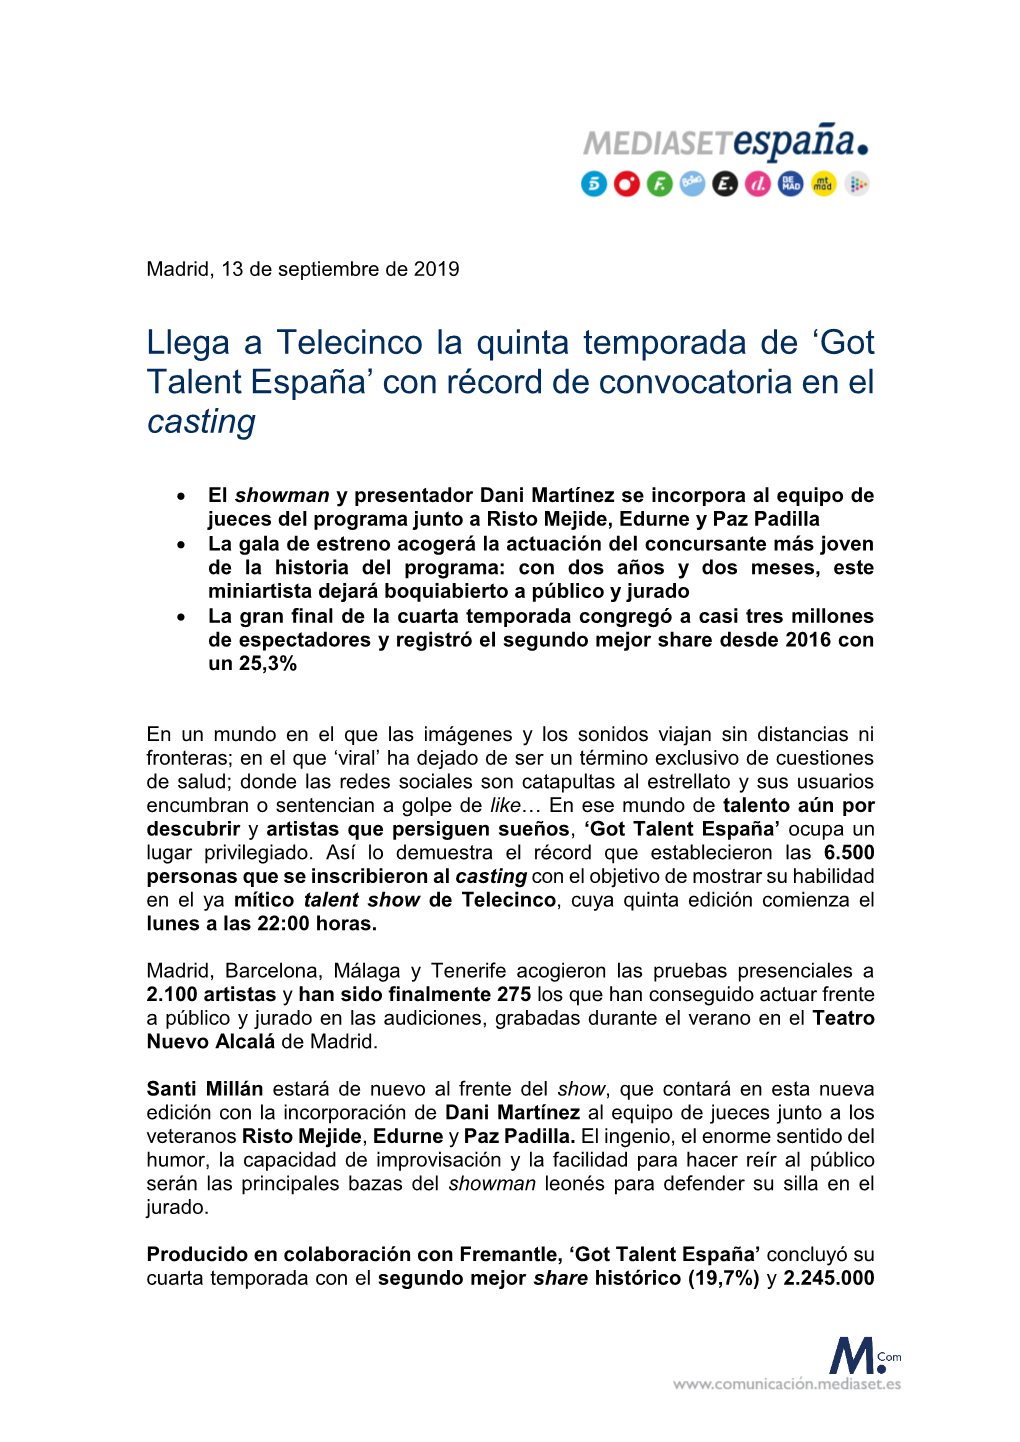 Got Talent España’ Con Récord De Convocatoria En El Casting